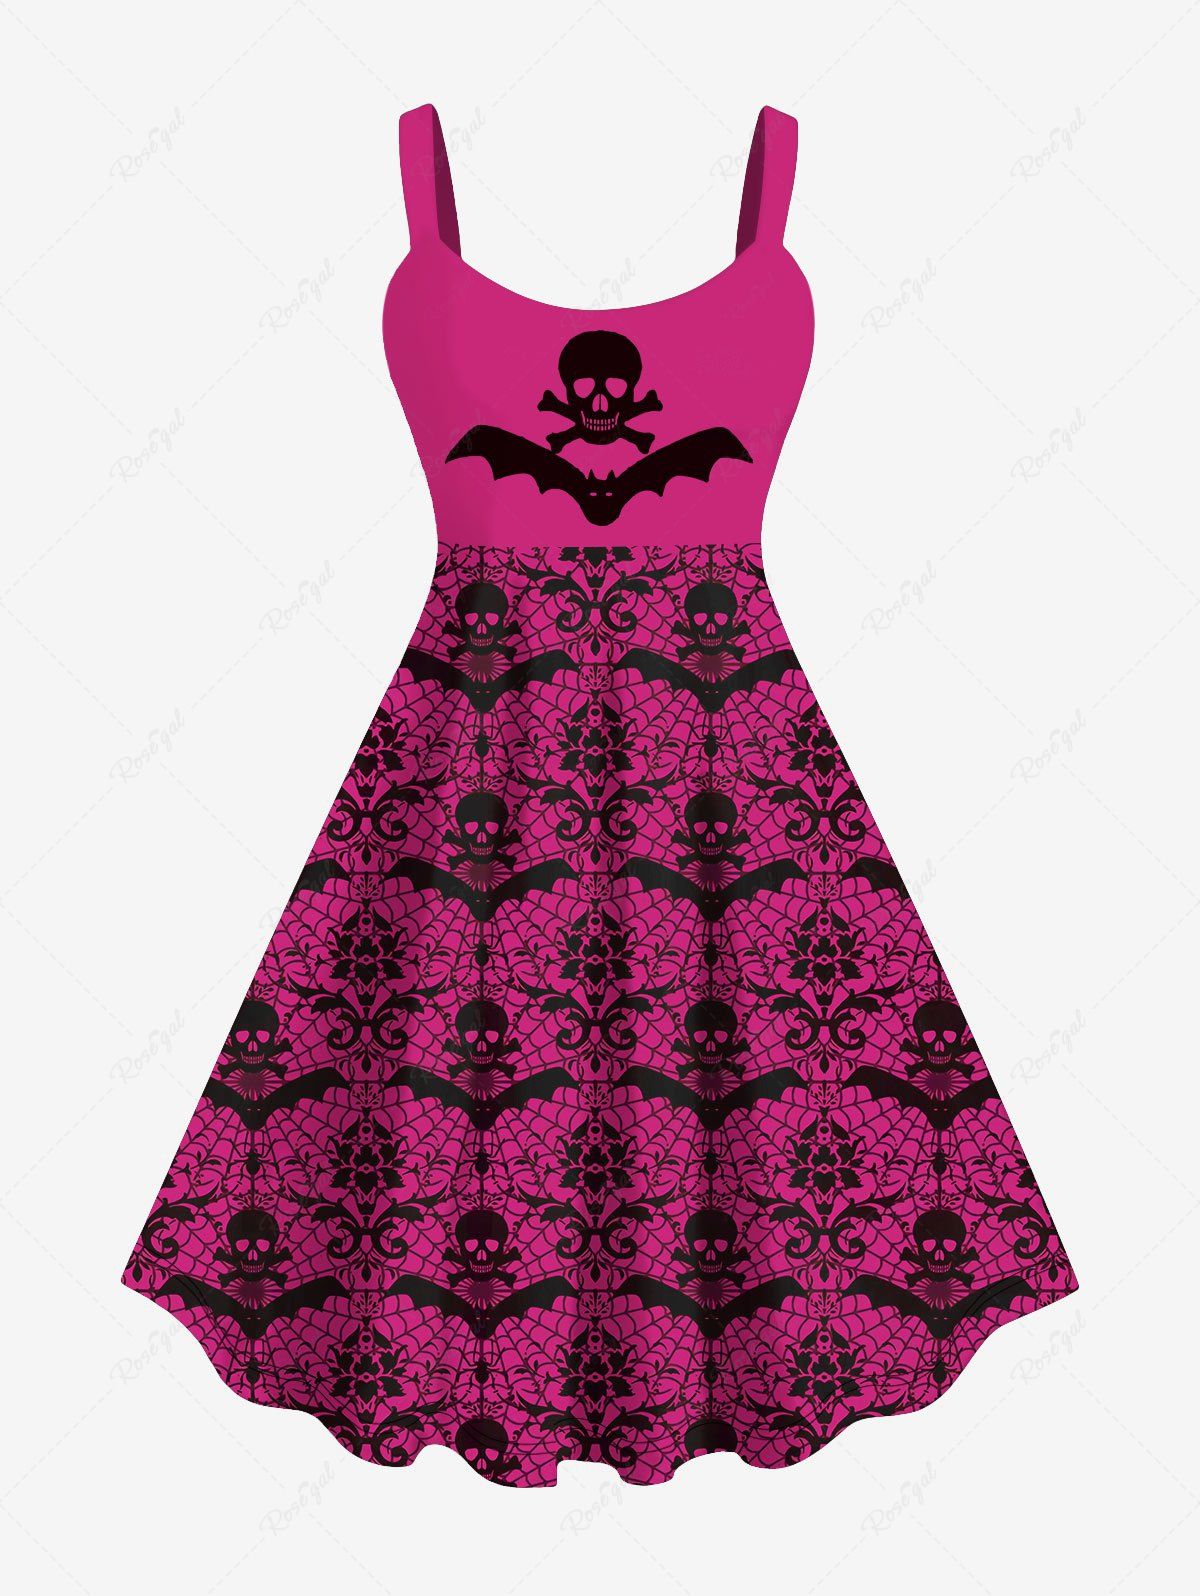 New Plus Size Halloween Skull Bat Spider Web Print Dress  